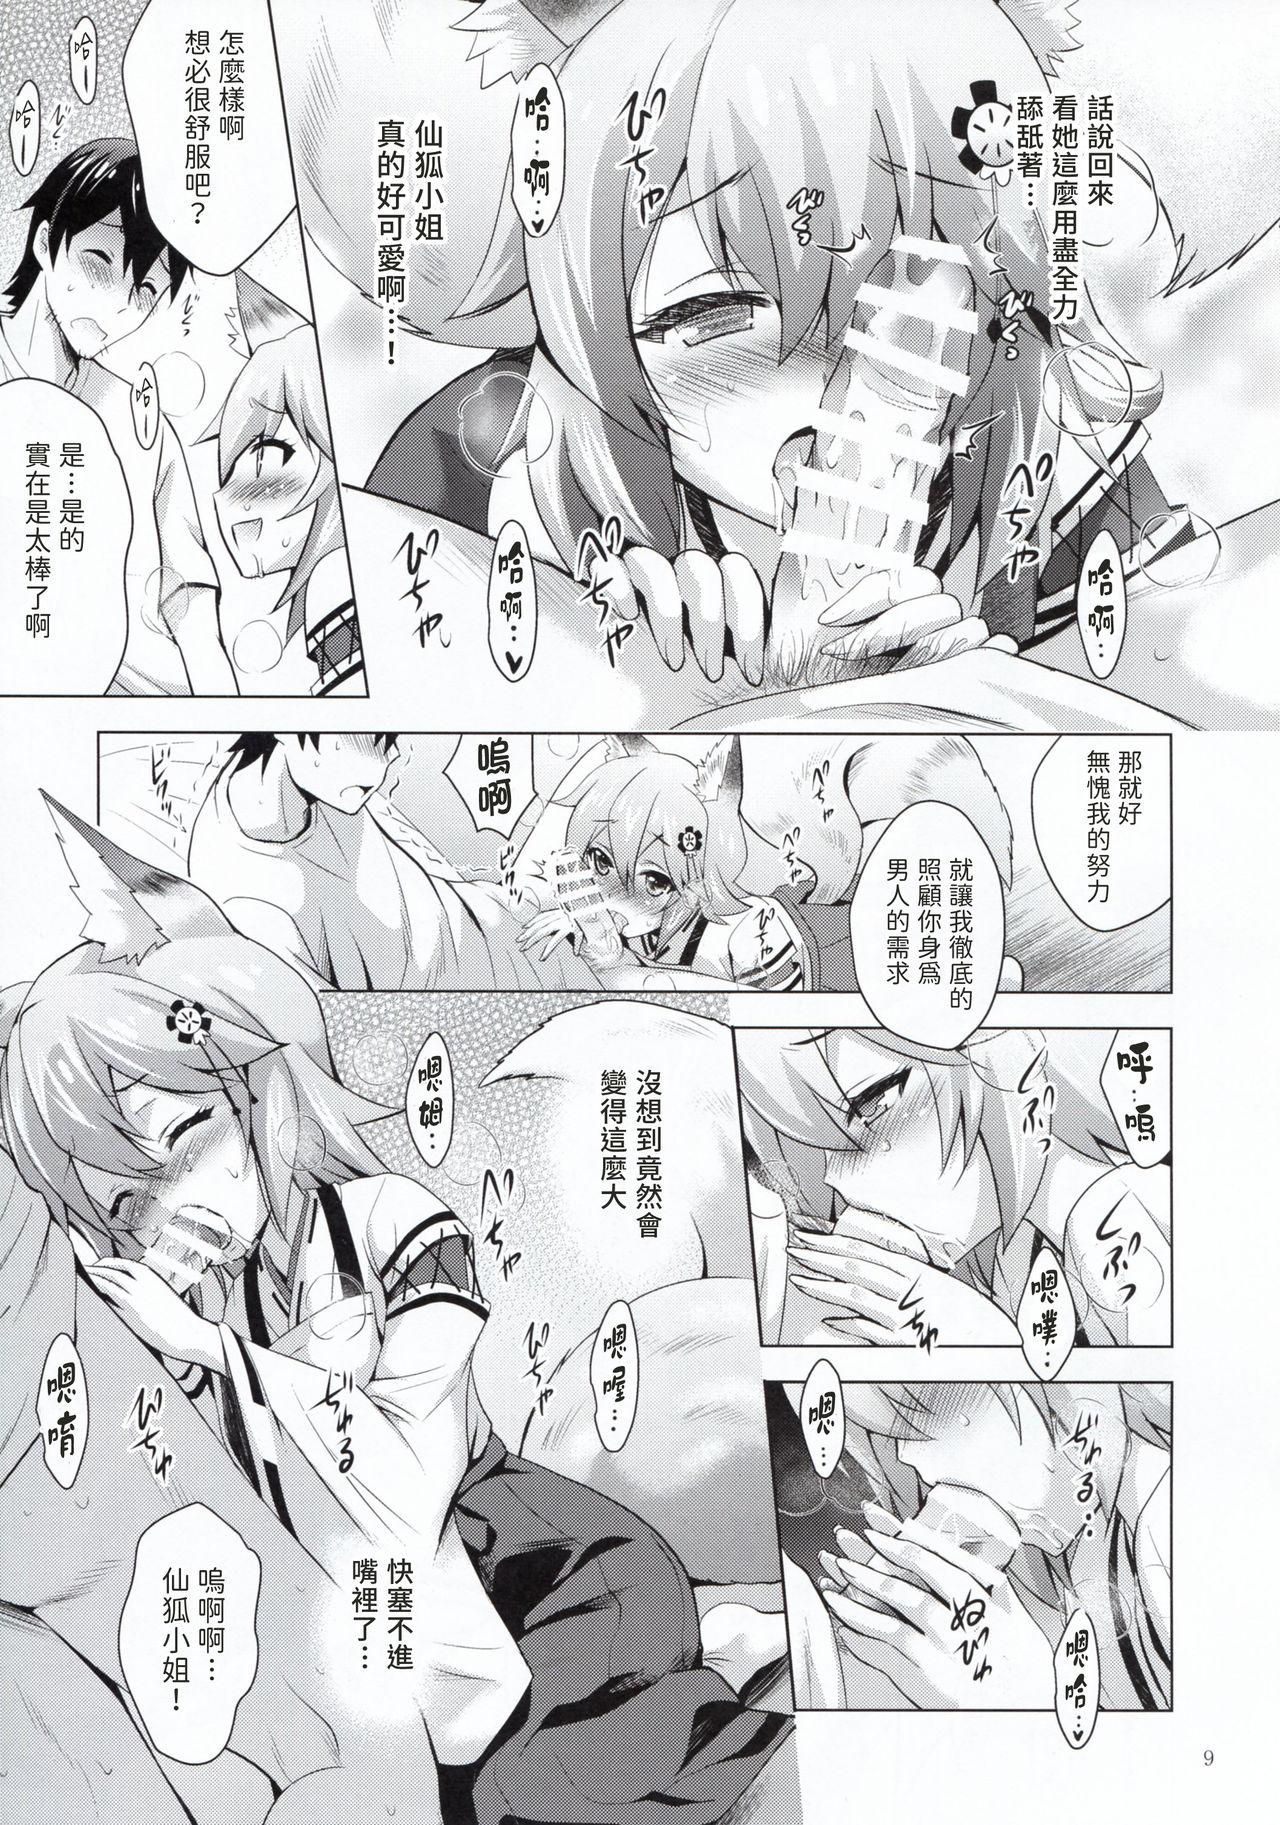 Pasivo MOUSOU Mini Theater 43 - Sewayaki kitsune no senko san Gay Hunks - Page 8